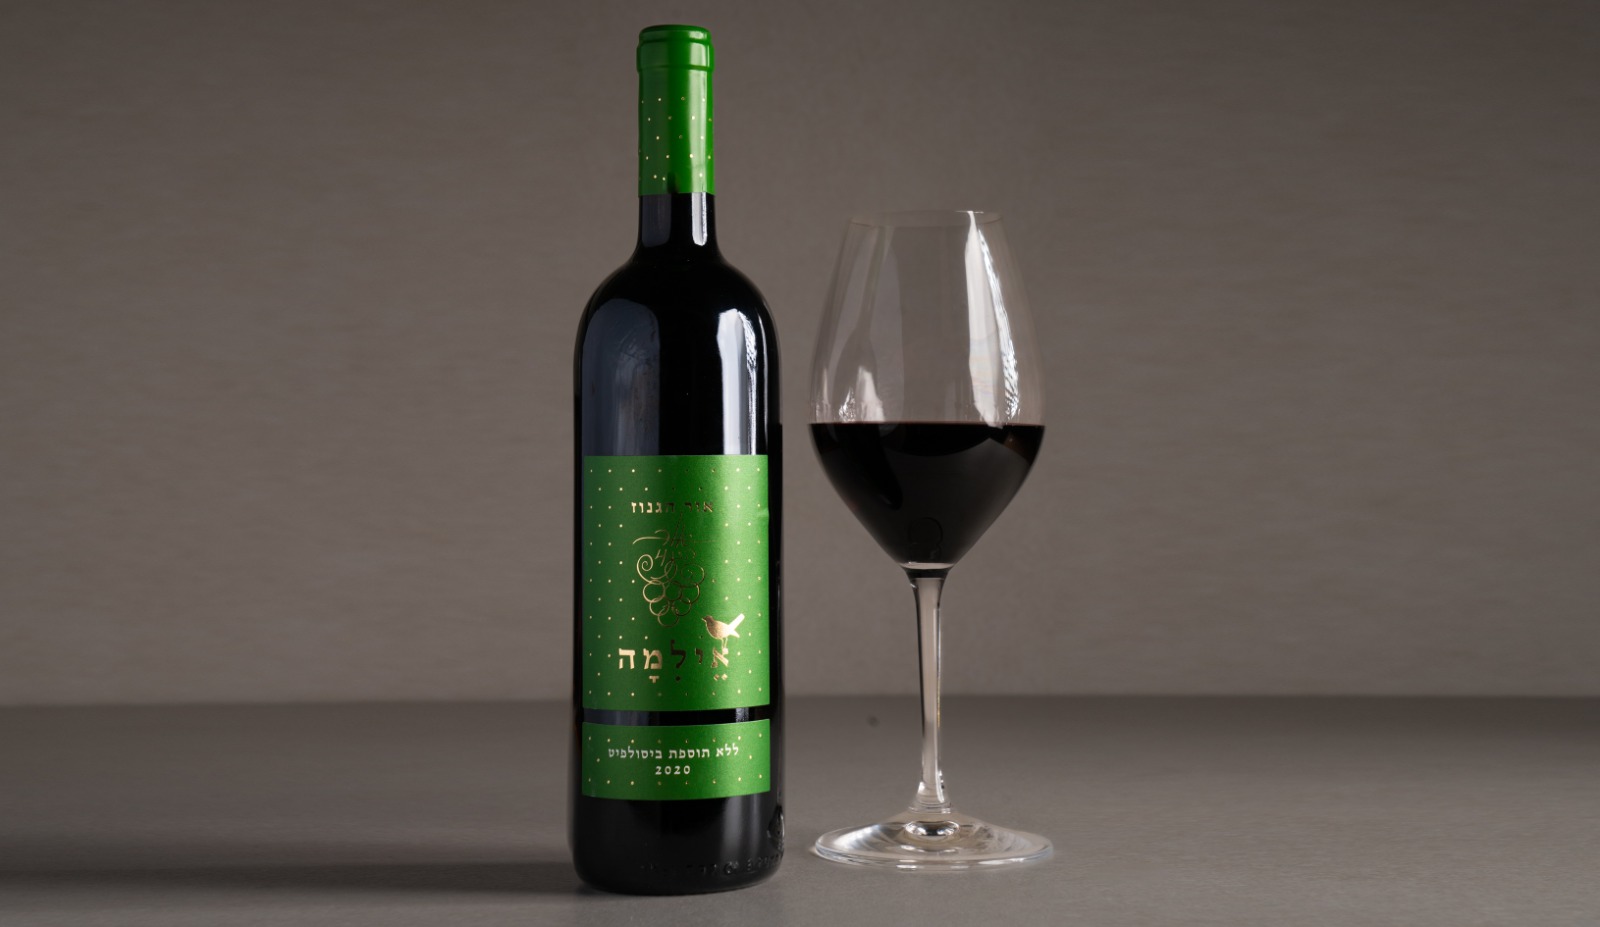 יין אדום יבש " אור הגנוז" אילמה 2020 ללא תוספת ביסולפיט